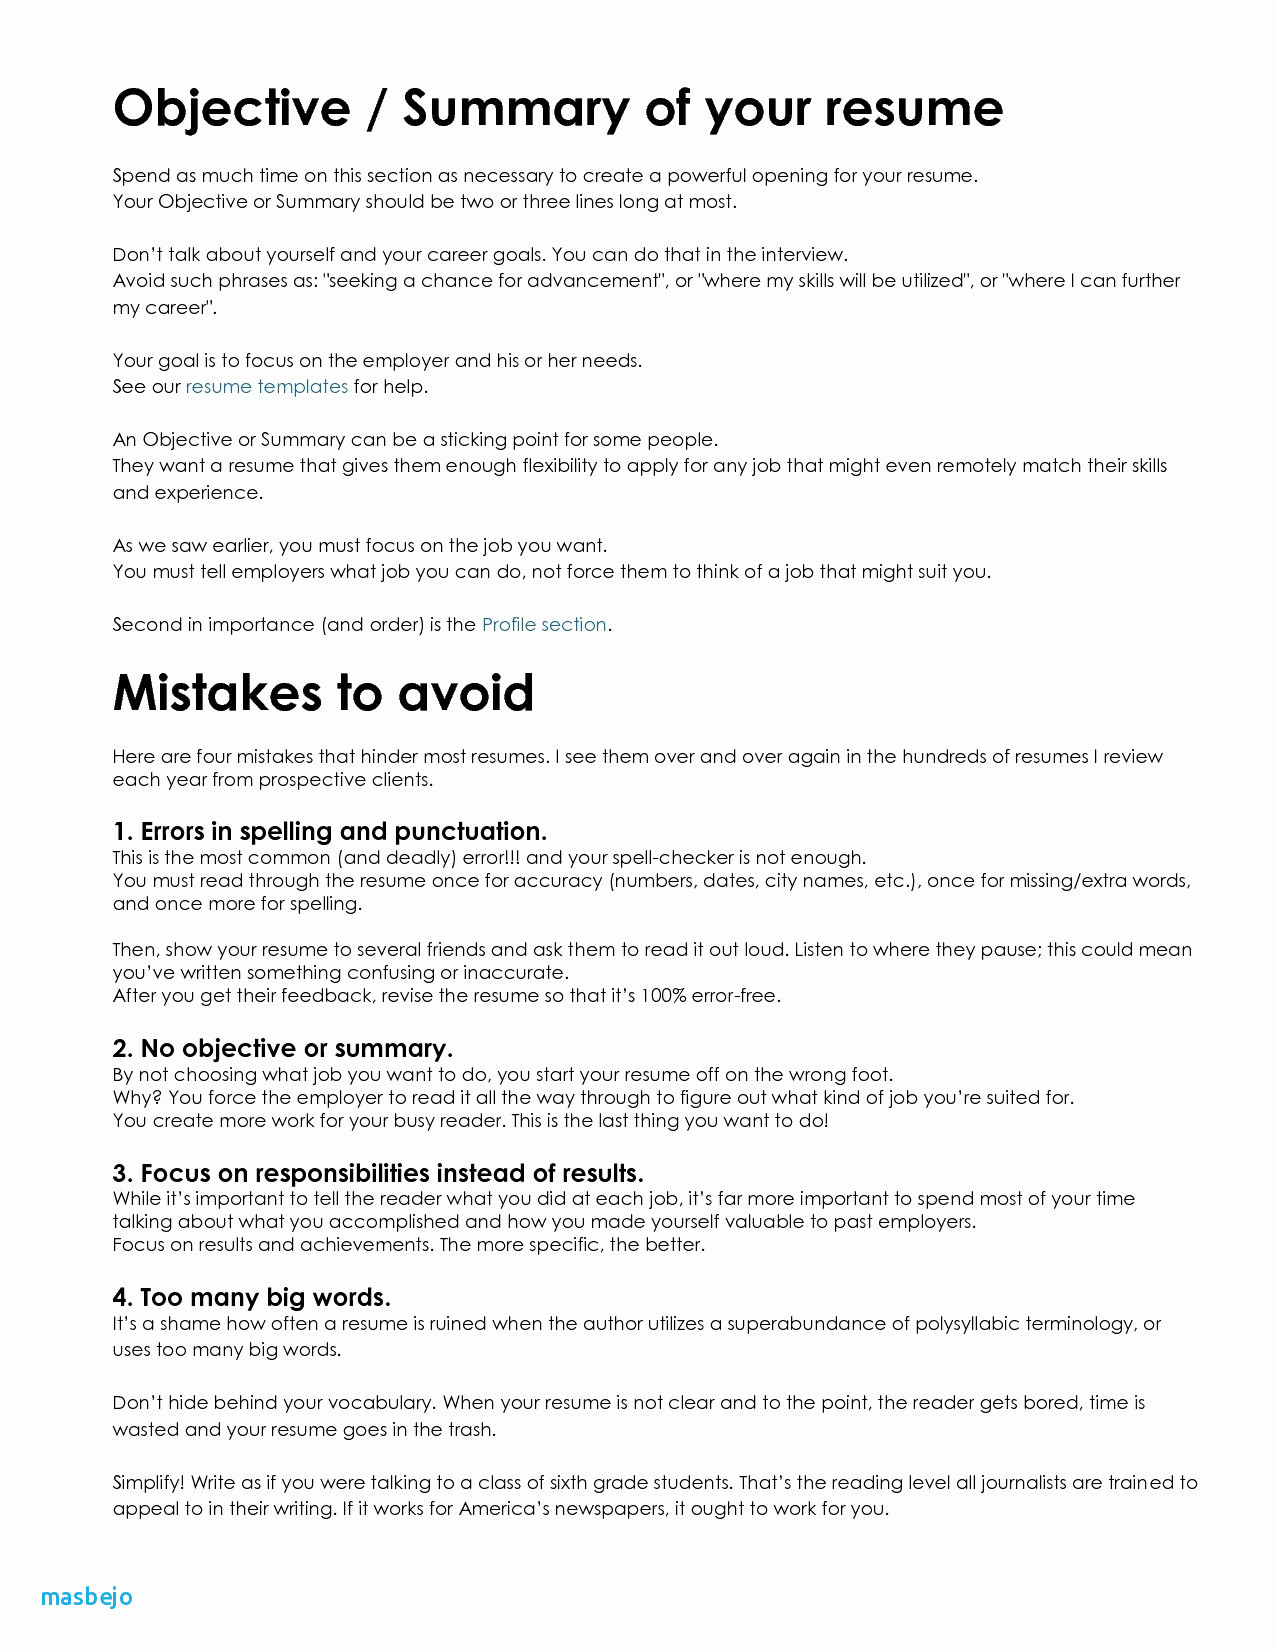 How To Spell Resume Resume How To Spell 4 how to spell resume|wikiresume.com